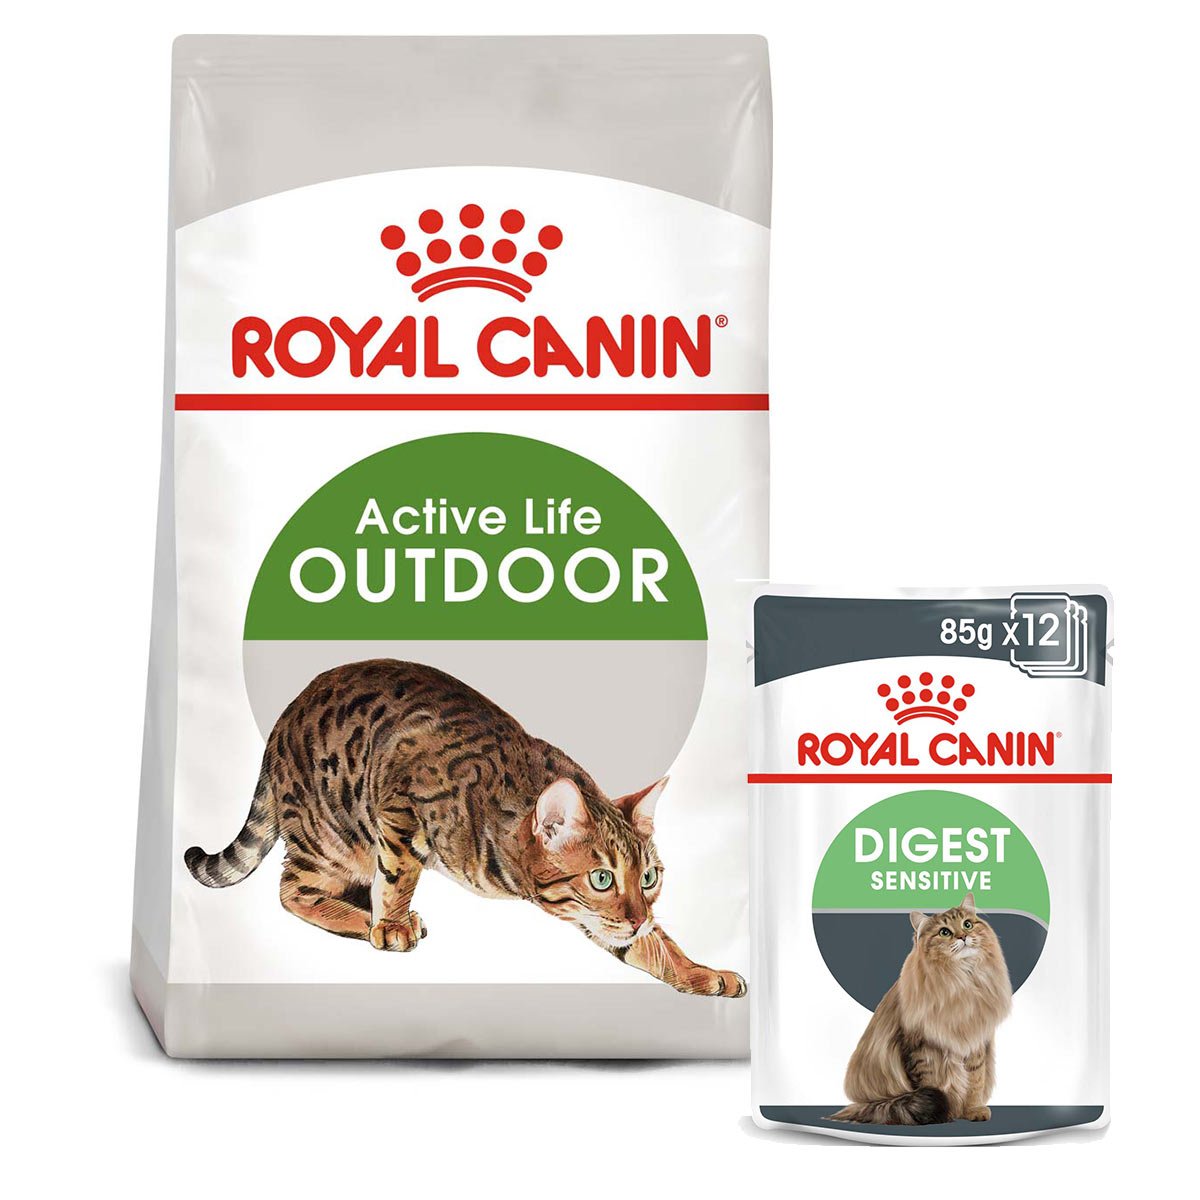 ROYAL CANIN OUTDOOR Trockenfutter 2kg + Digest Sensitive Nassfutter 12x85g von Royal Canin